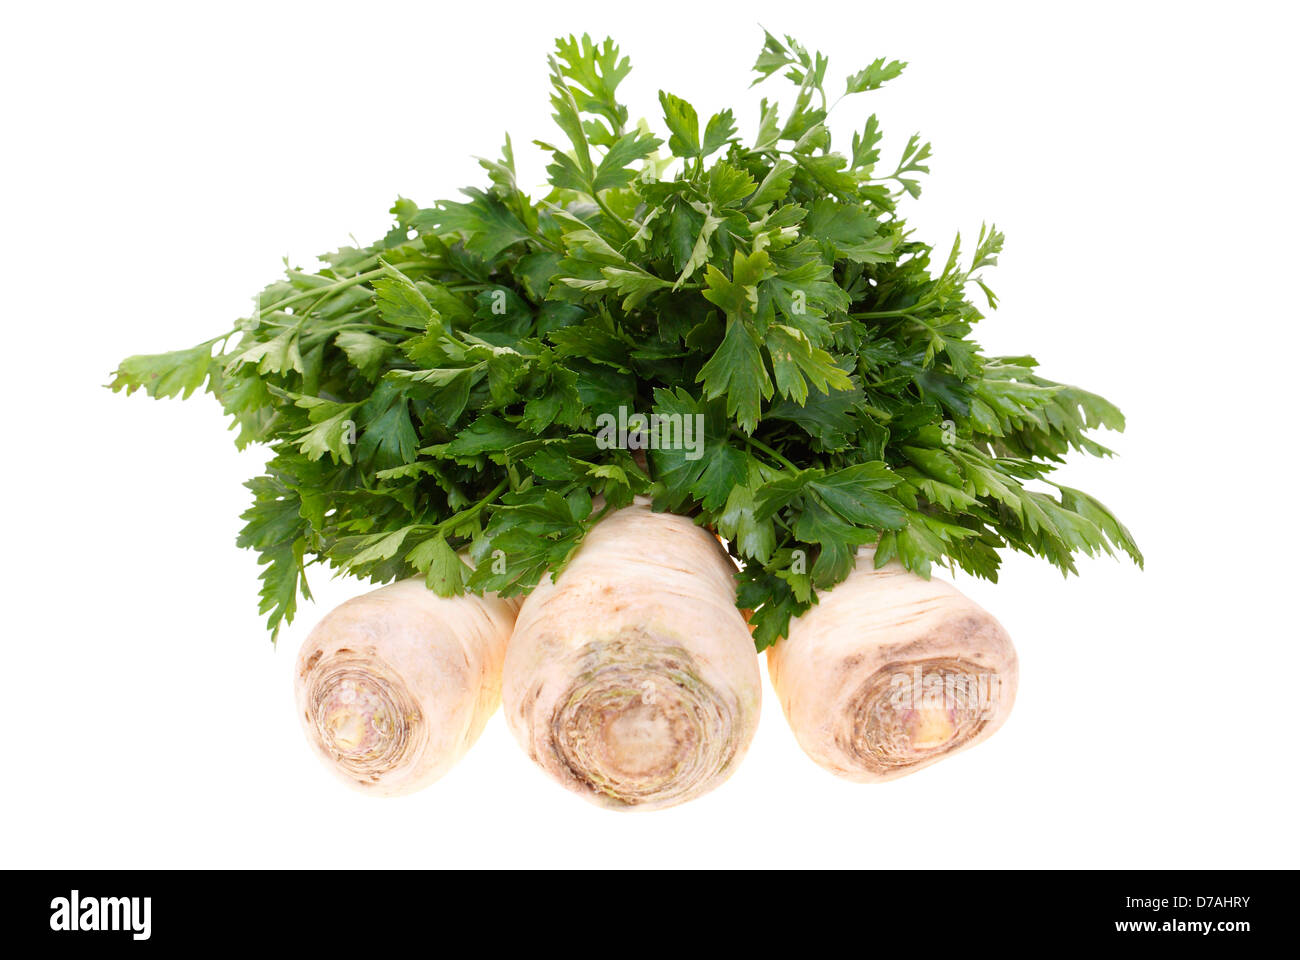 three big parsleys isolated on white background Stock Photo